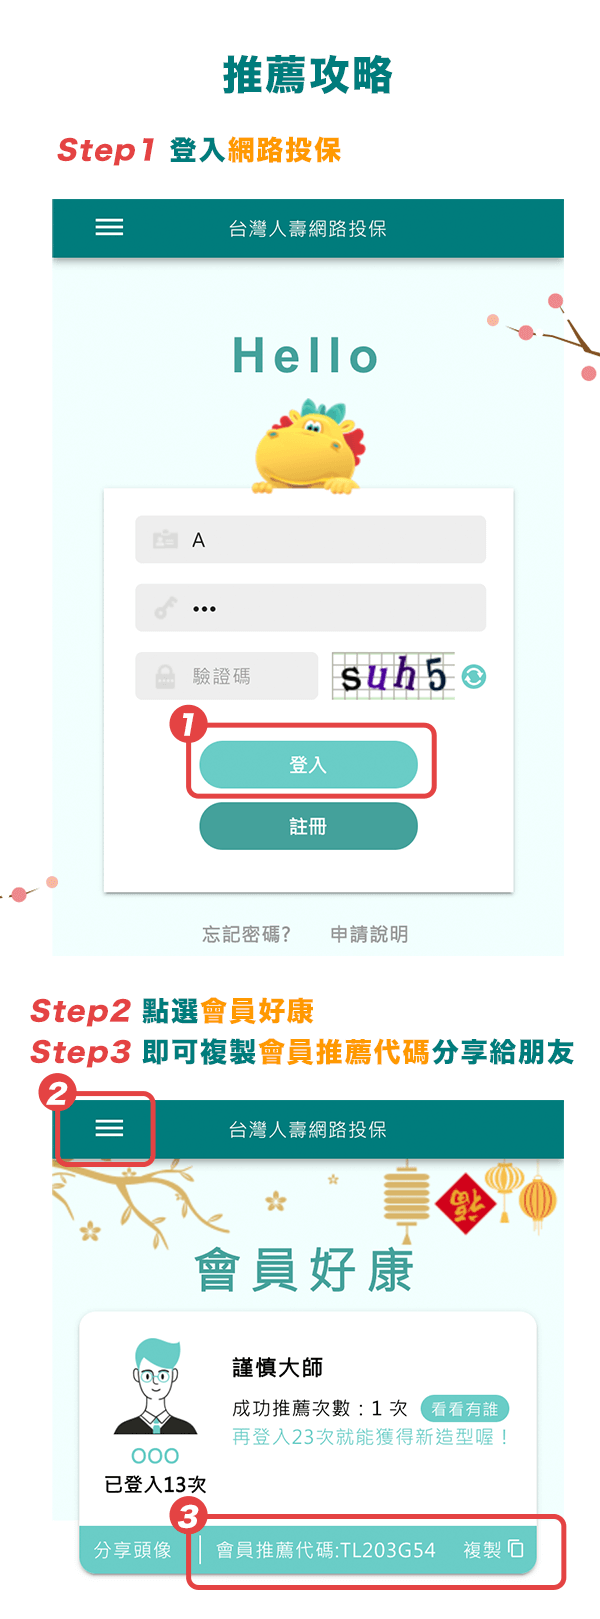 推薦攻略-Step1 登入「網路投保」、Step2 點選「會員好康」、Step3 即可複製「會員推薦代碼」分享給朋友